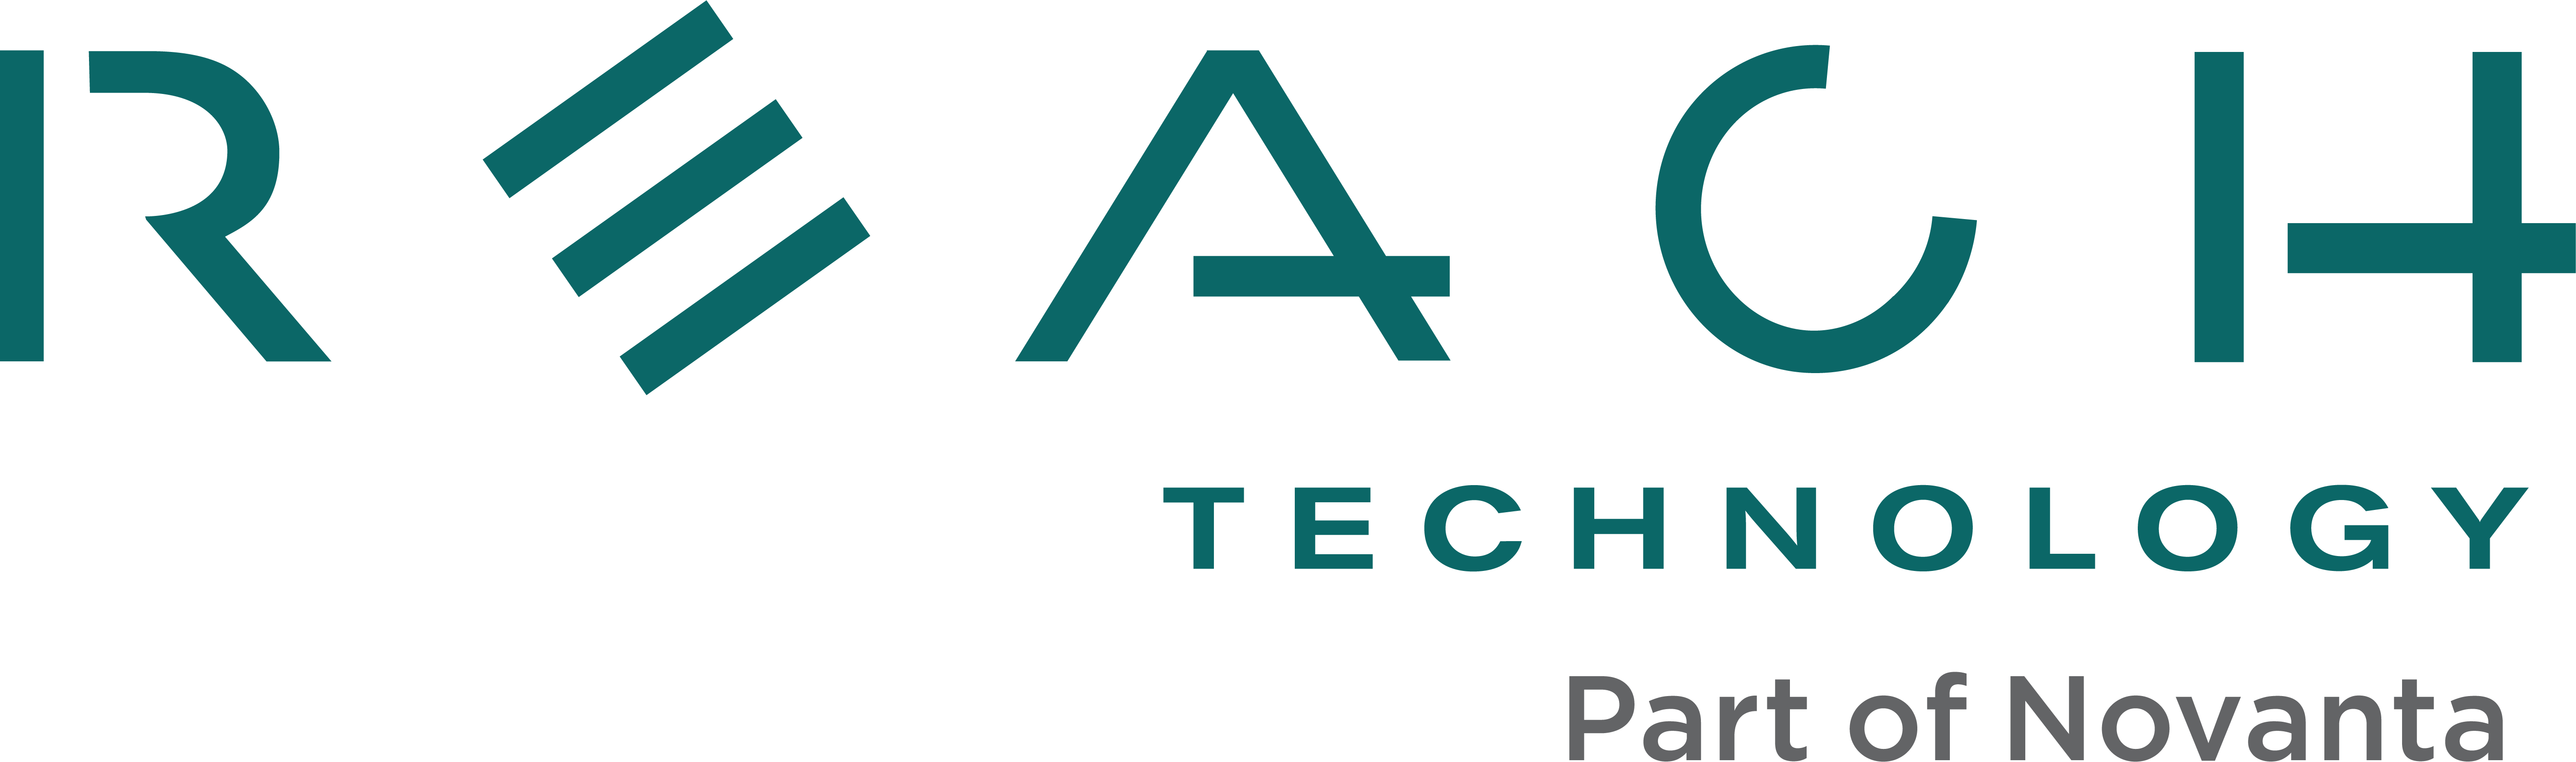 Reach Technology Logo